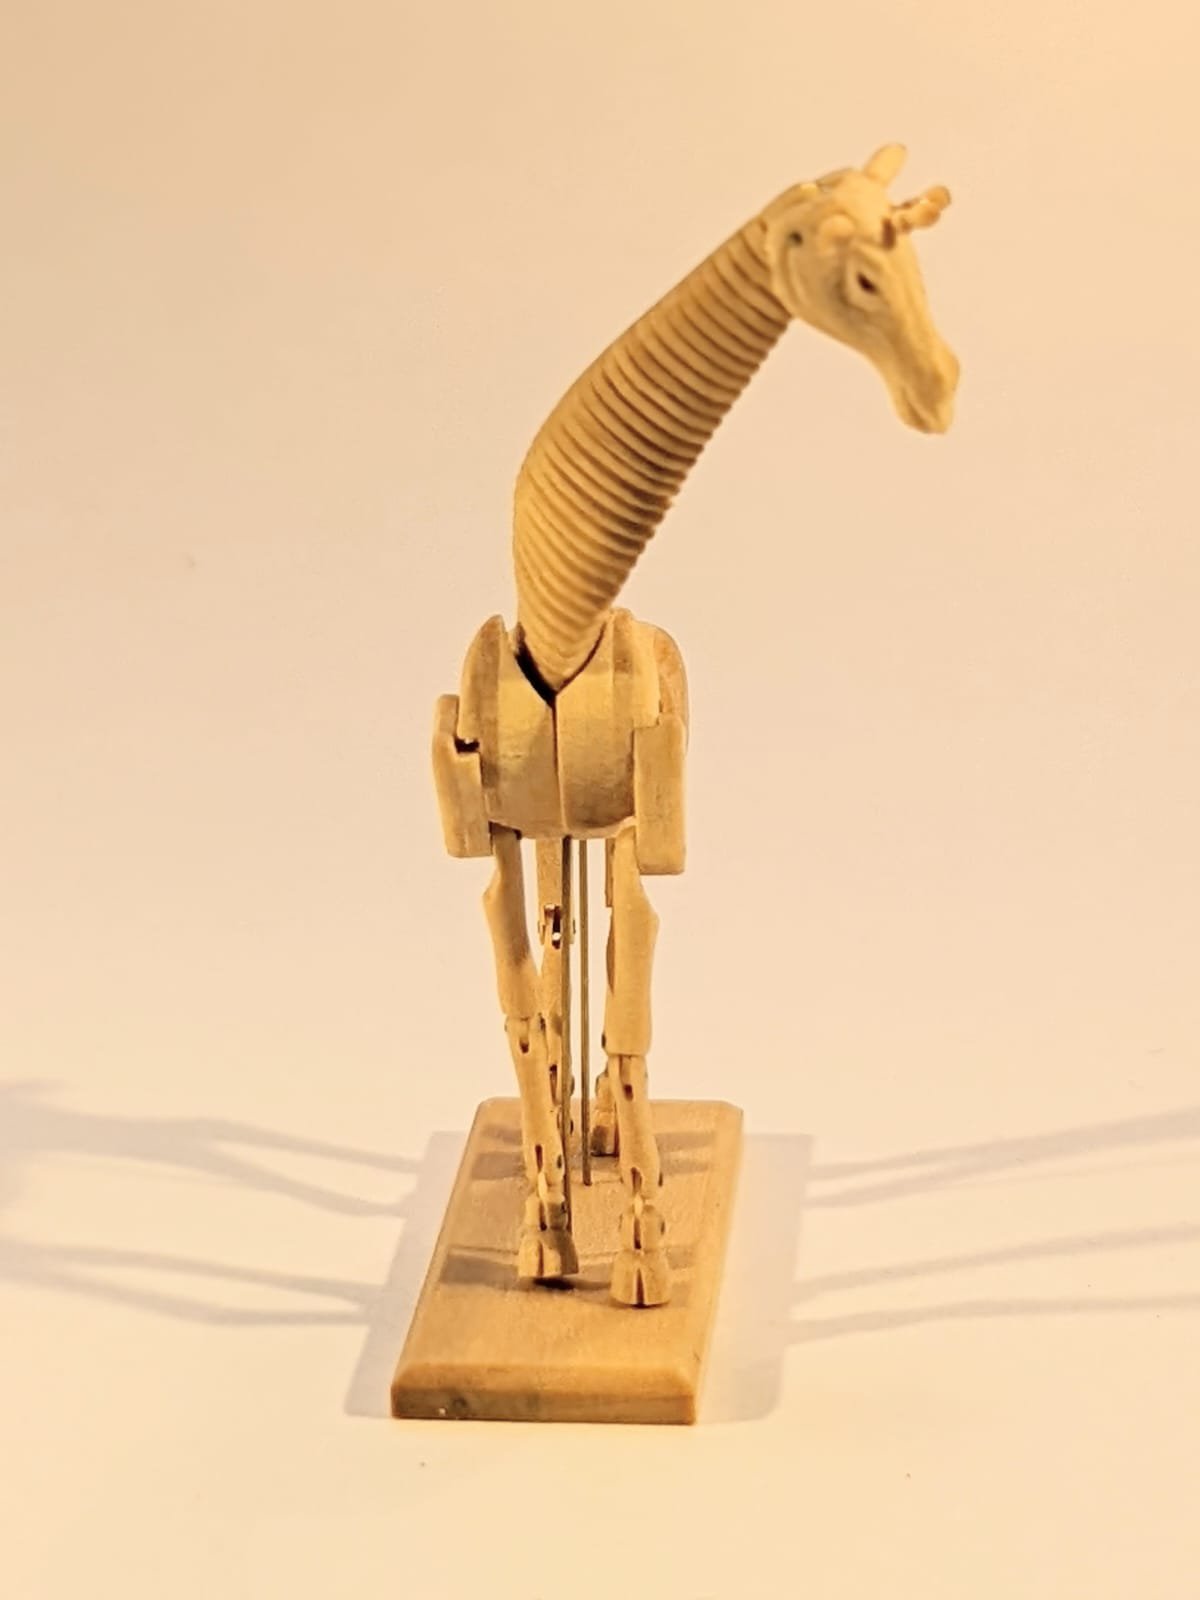 artists-model-giraffe-miniature-6.jpg